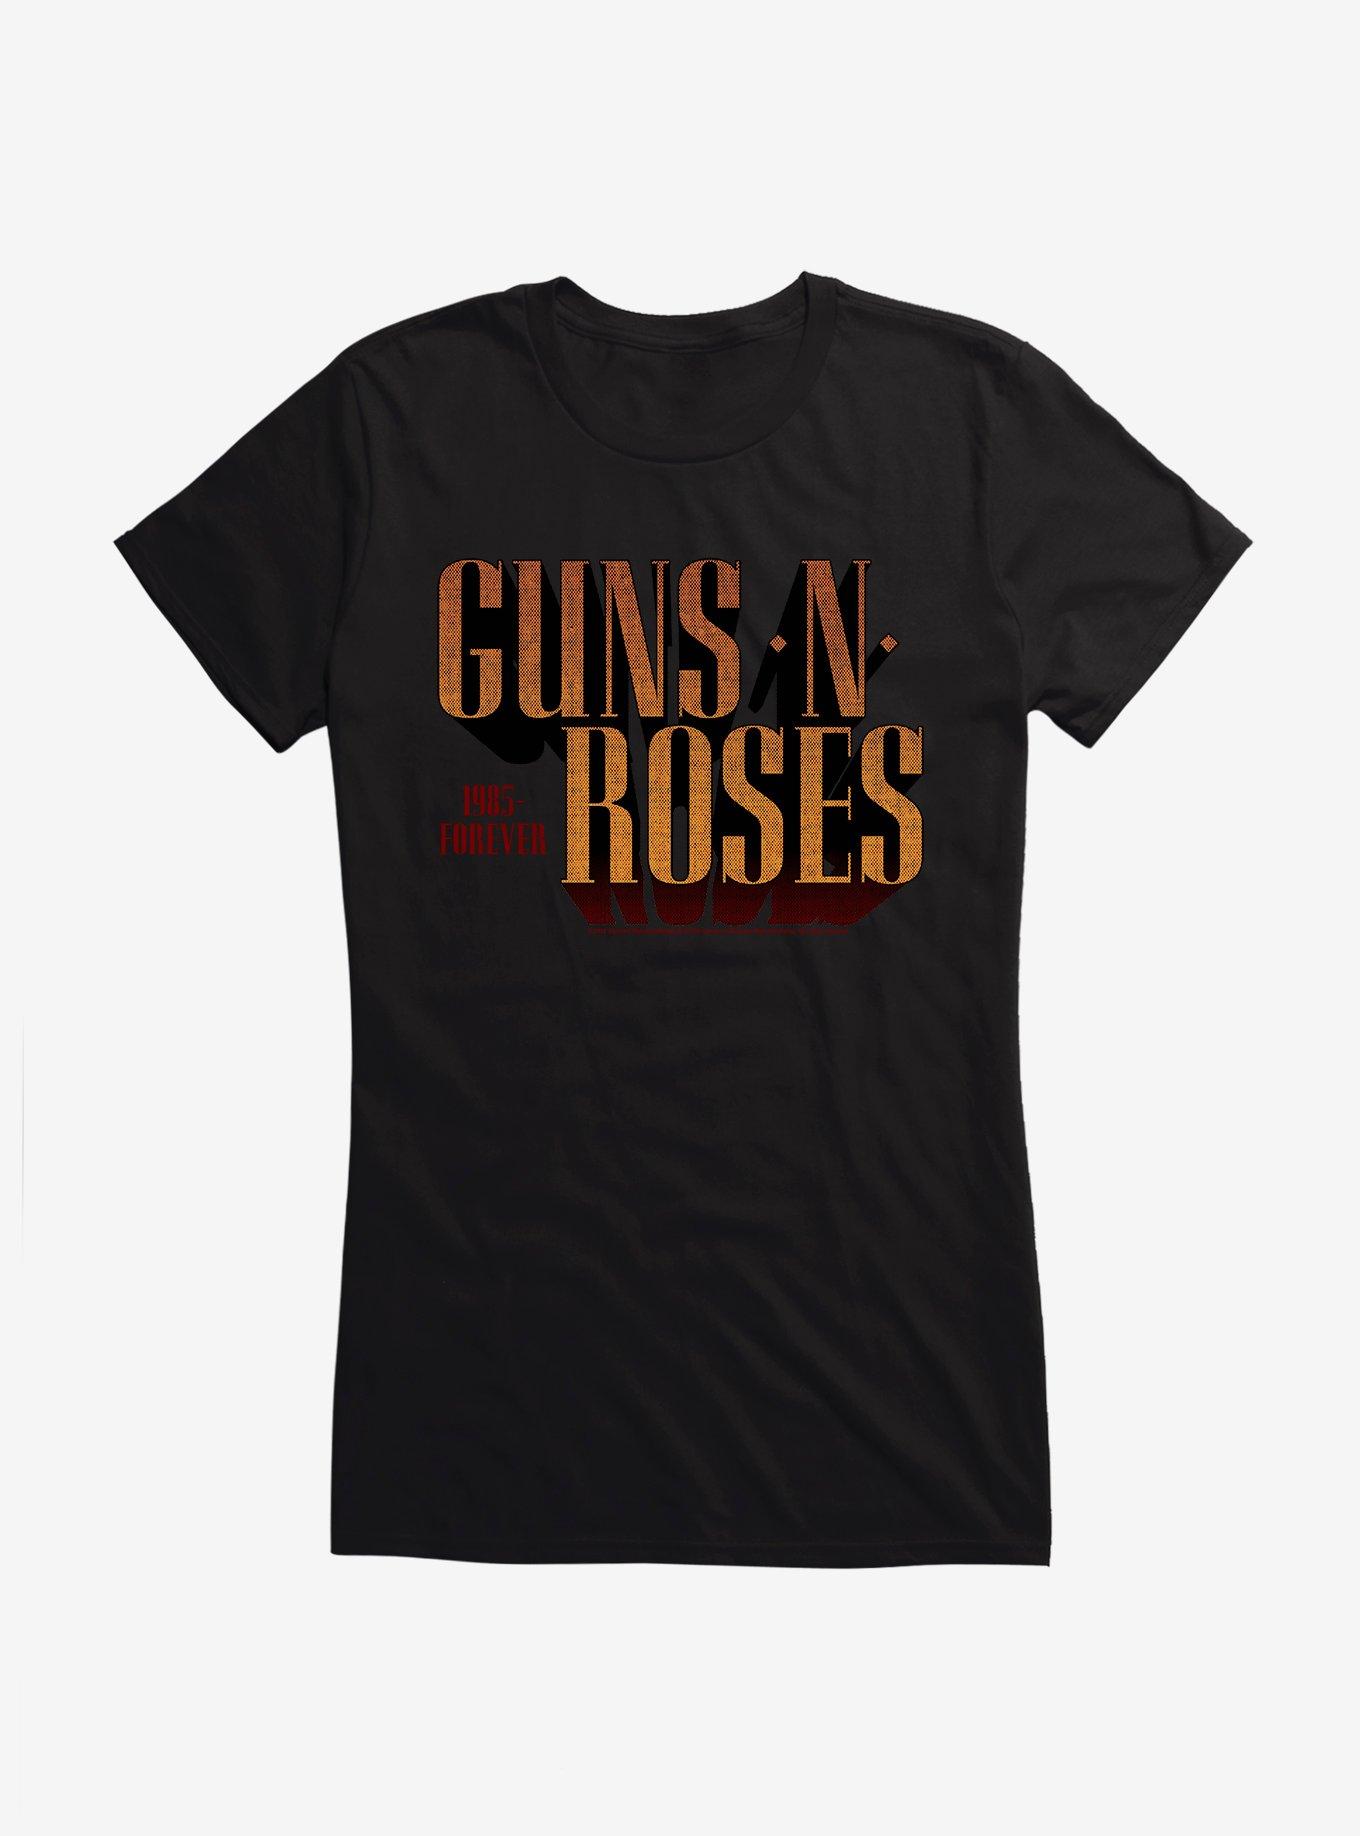 Guns N' Roses 1985-Forever Girls T-Shirt, BLACK, hi-res